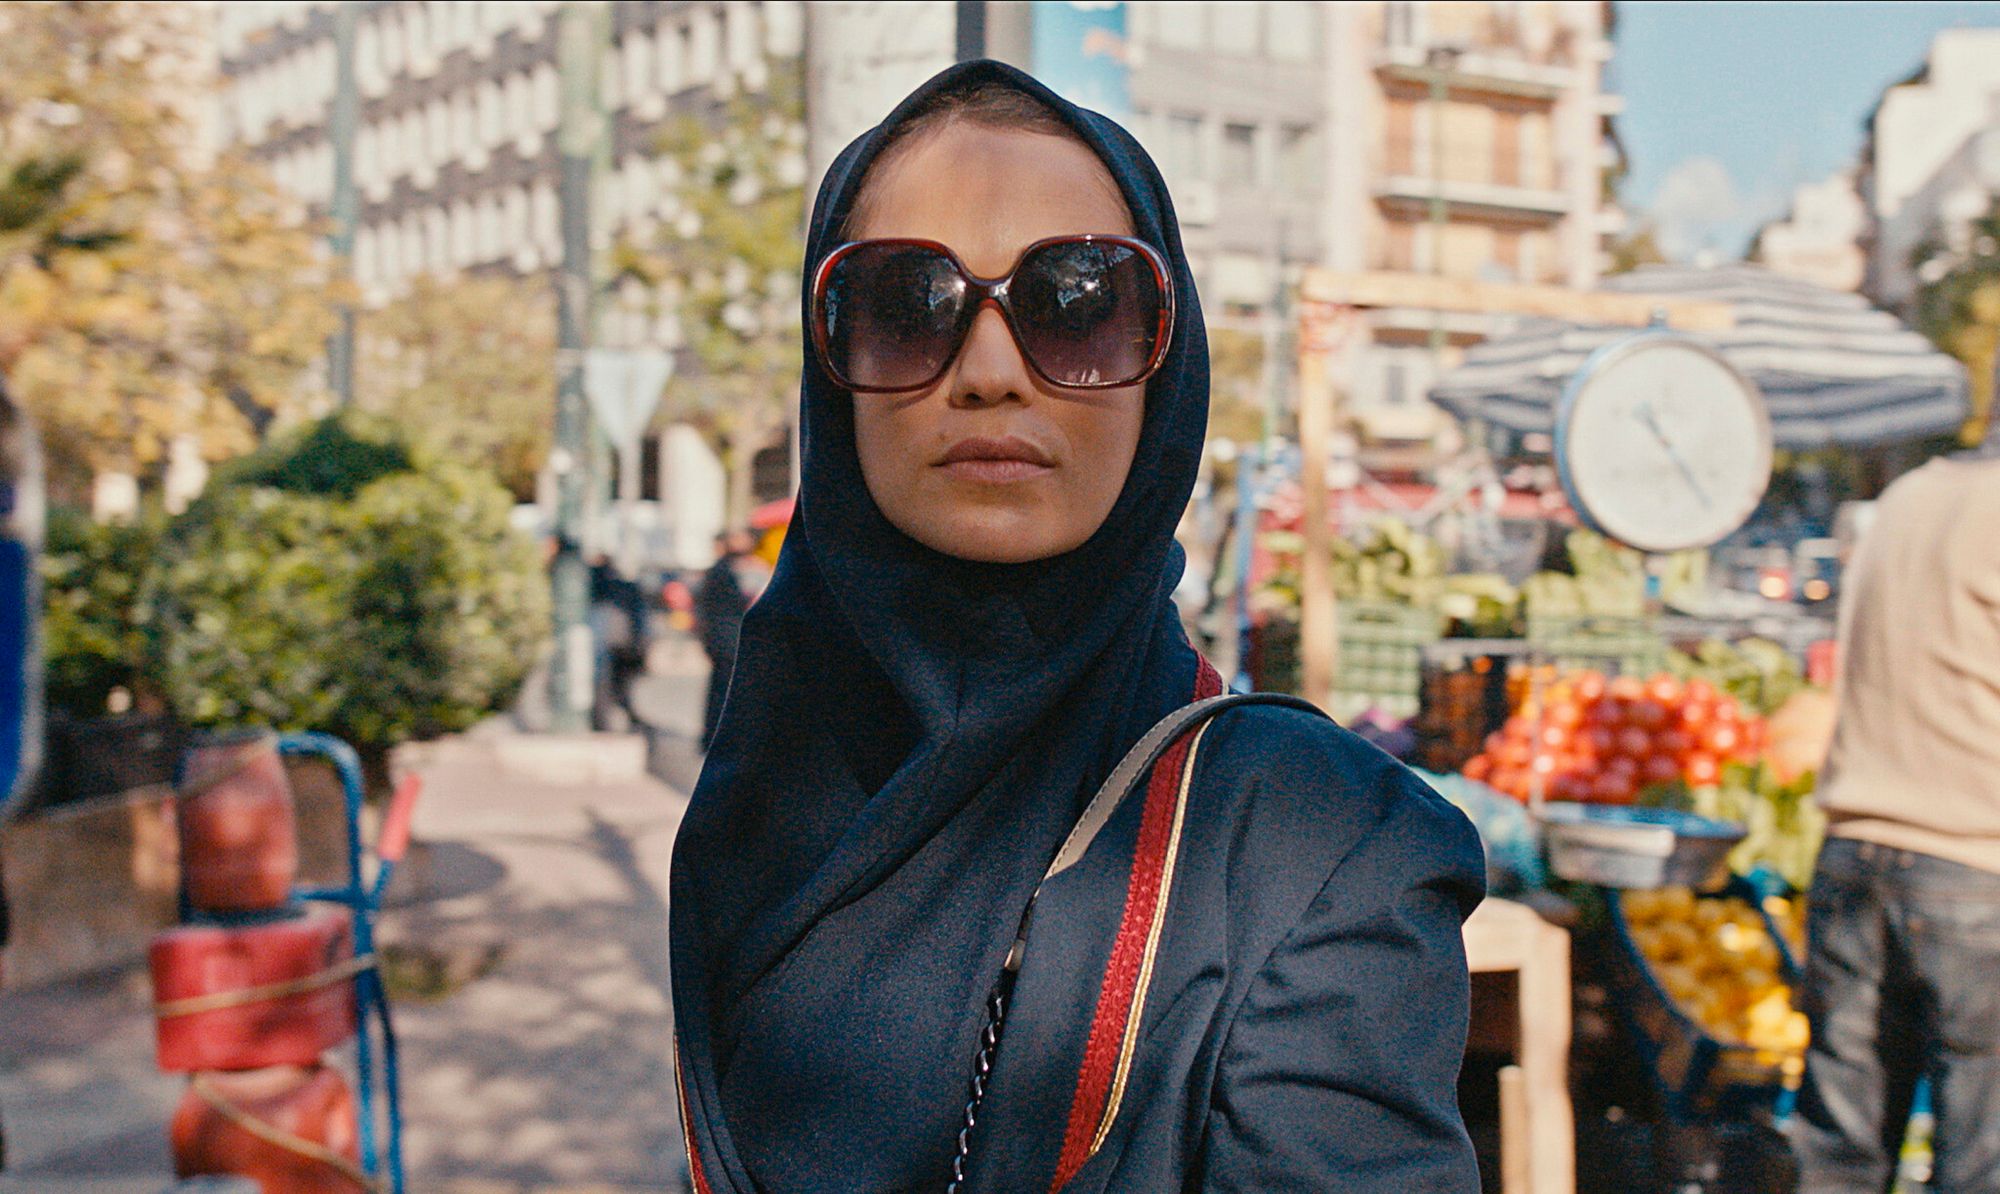 Сериал «Тегеран» для Apple TV+ получит премию «Эмми» как лучшее драматическое шоу 2021 года